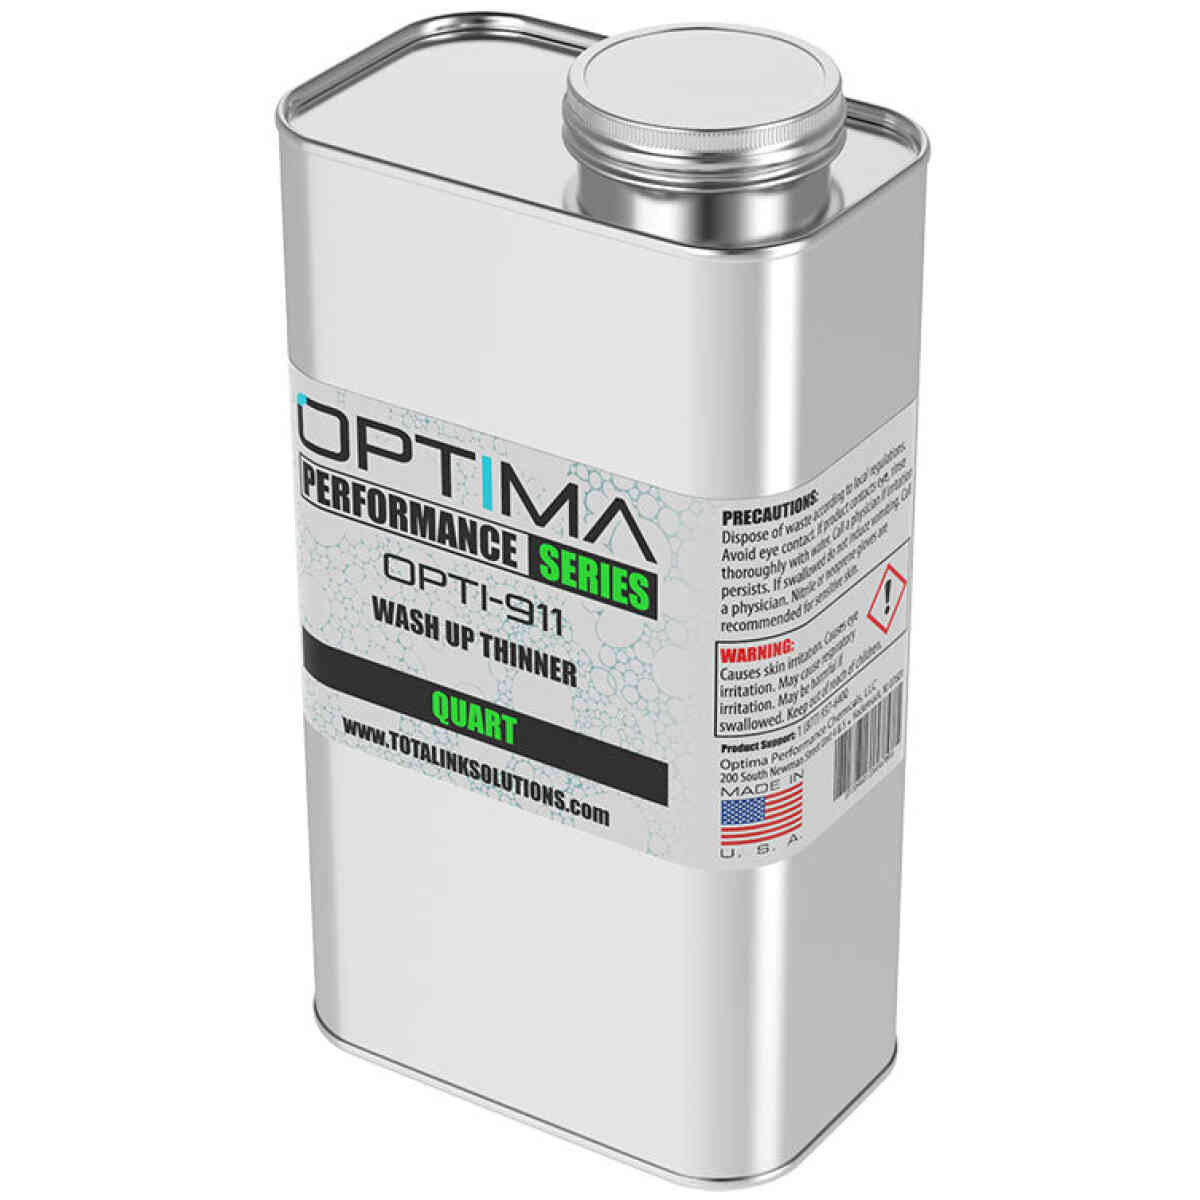 Opti-911 Wash Up Thinner OPTIMA PERFORMANCE SERIES®